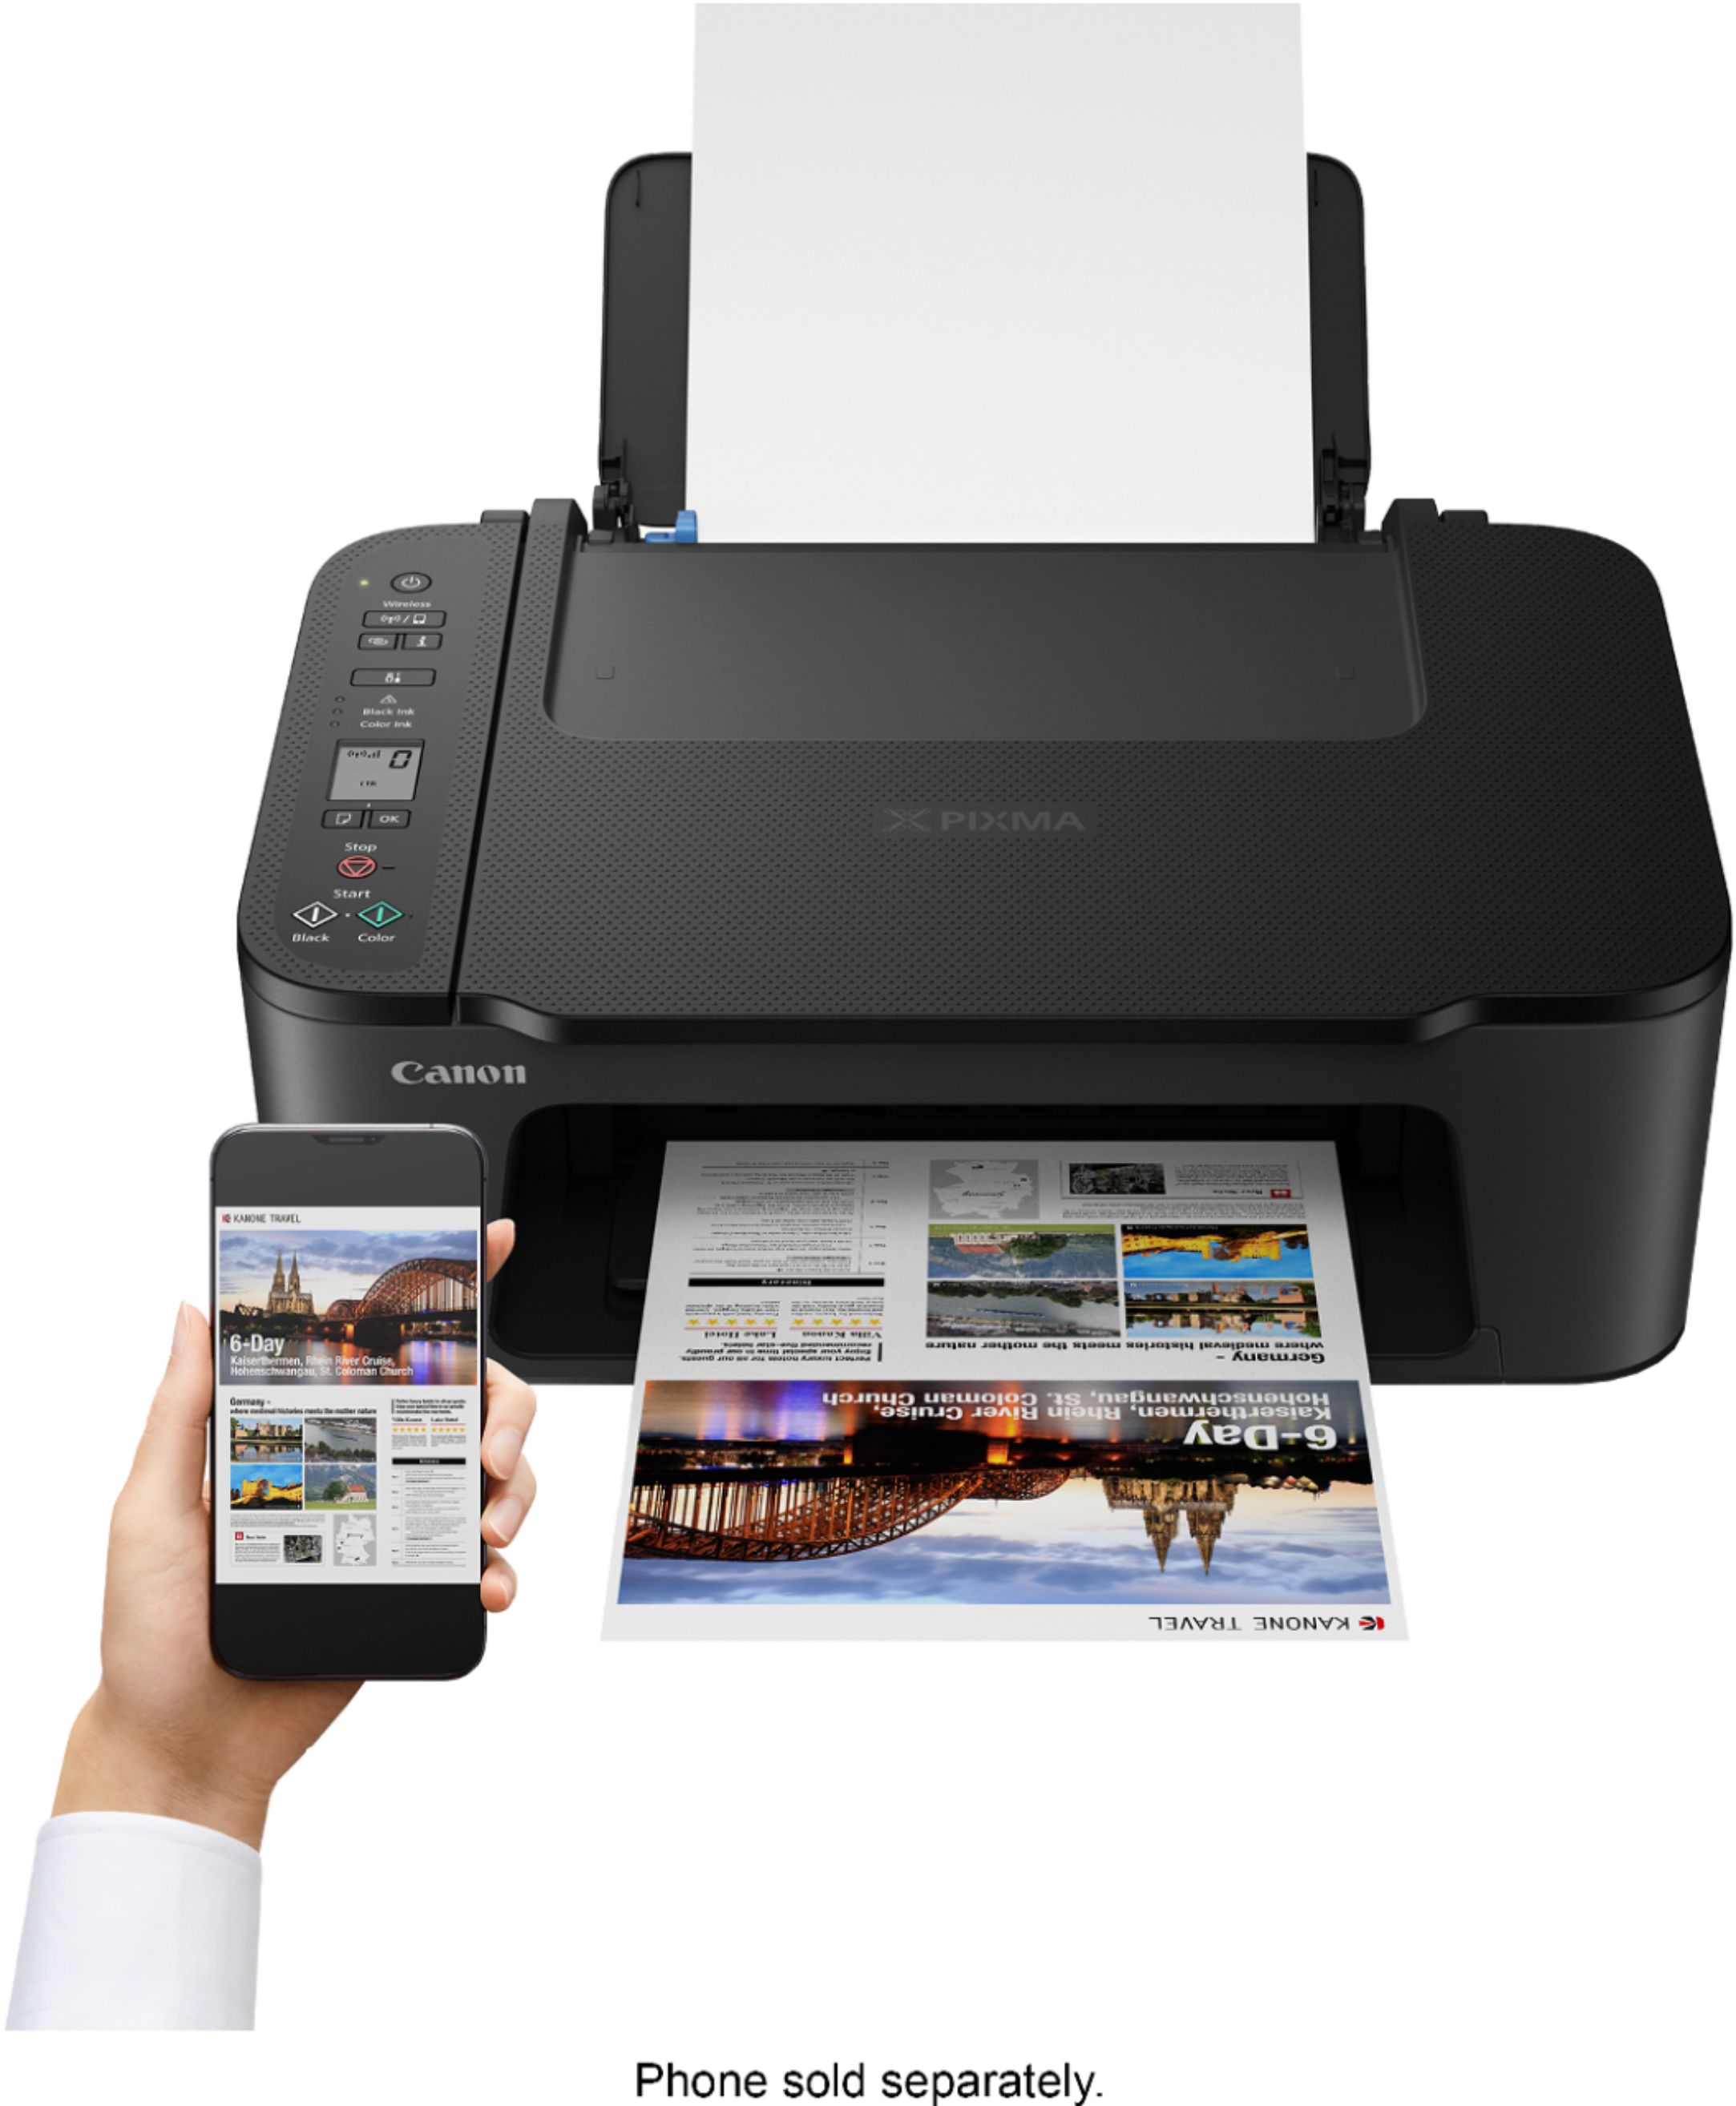 Canon Pixma TS3520 Printer Review - Consumer Reports